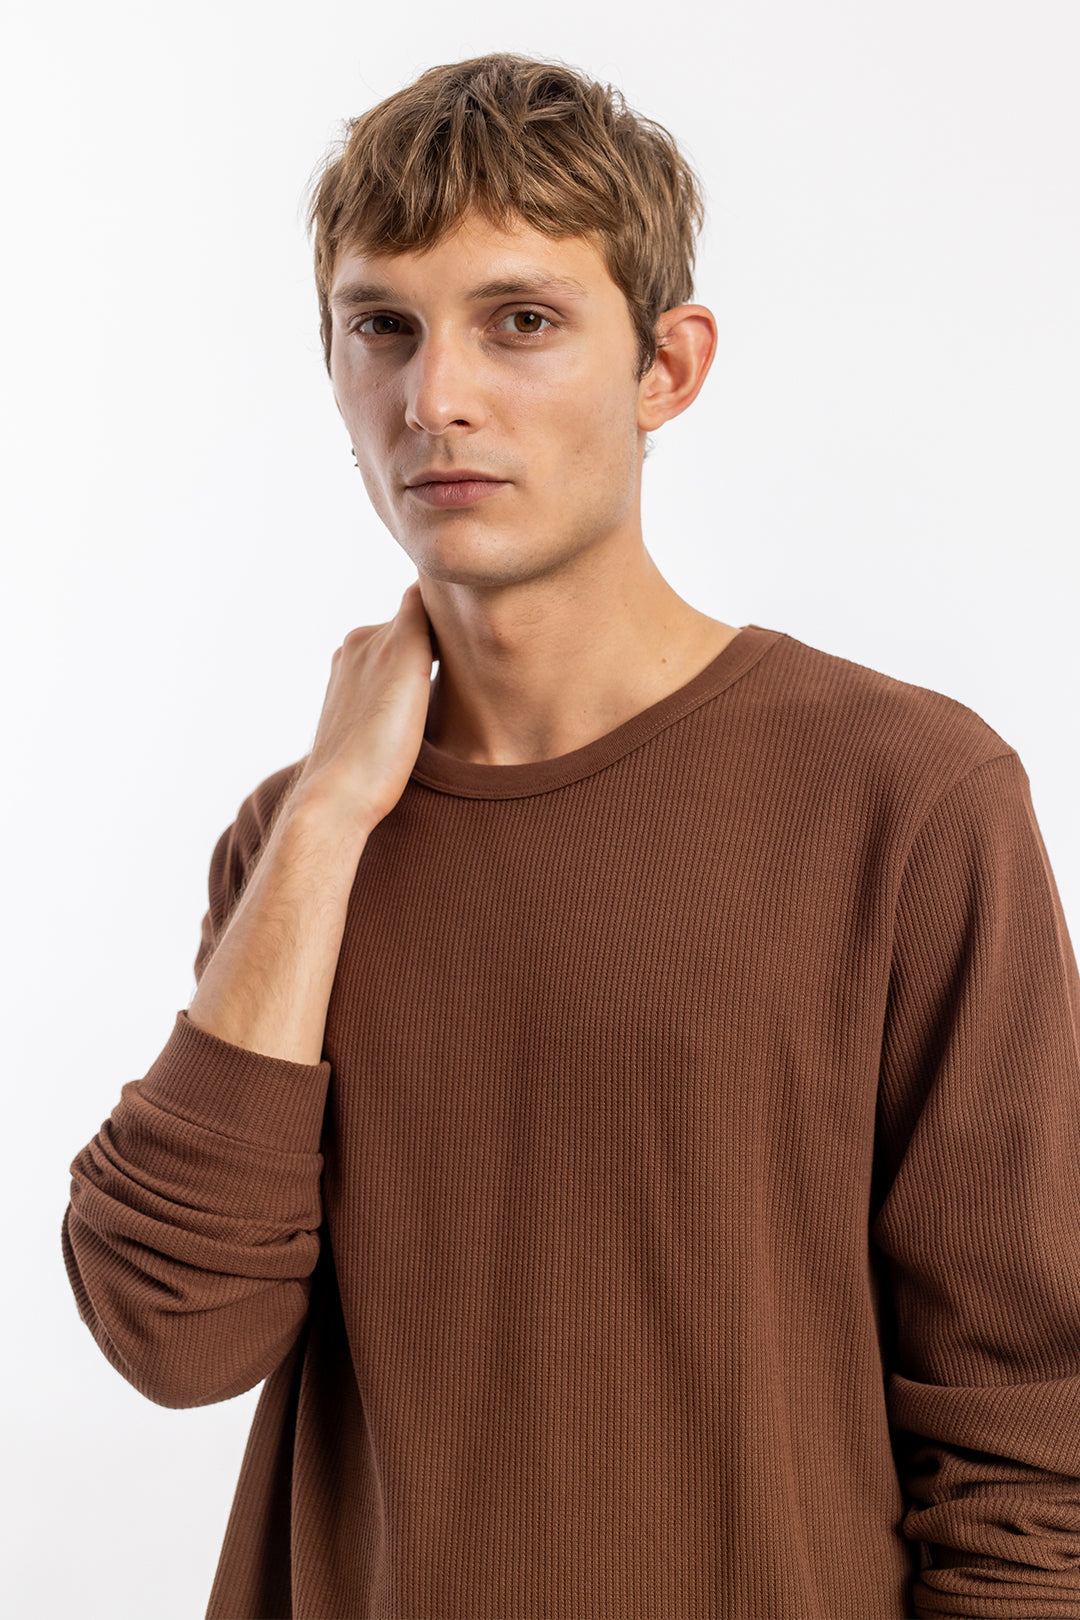 Braunes, langärmliges Shirt Waffel aus Bio-Baumwolle von Rotholz